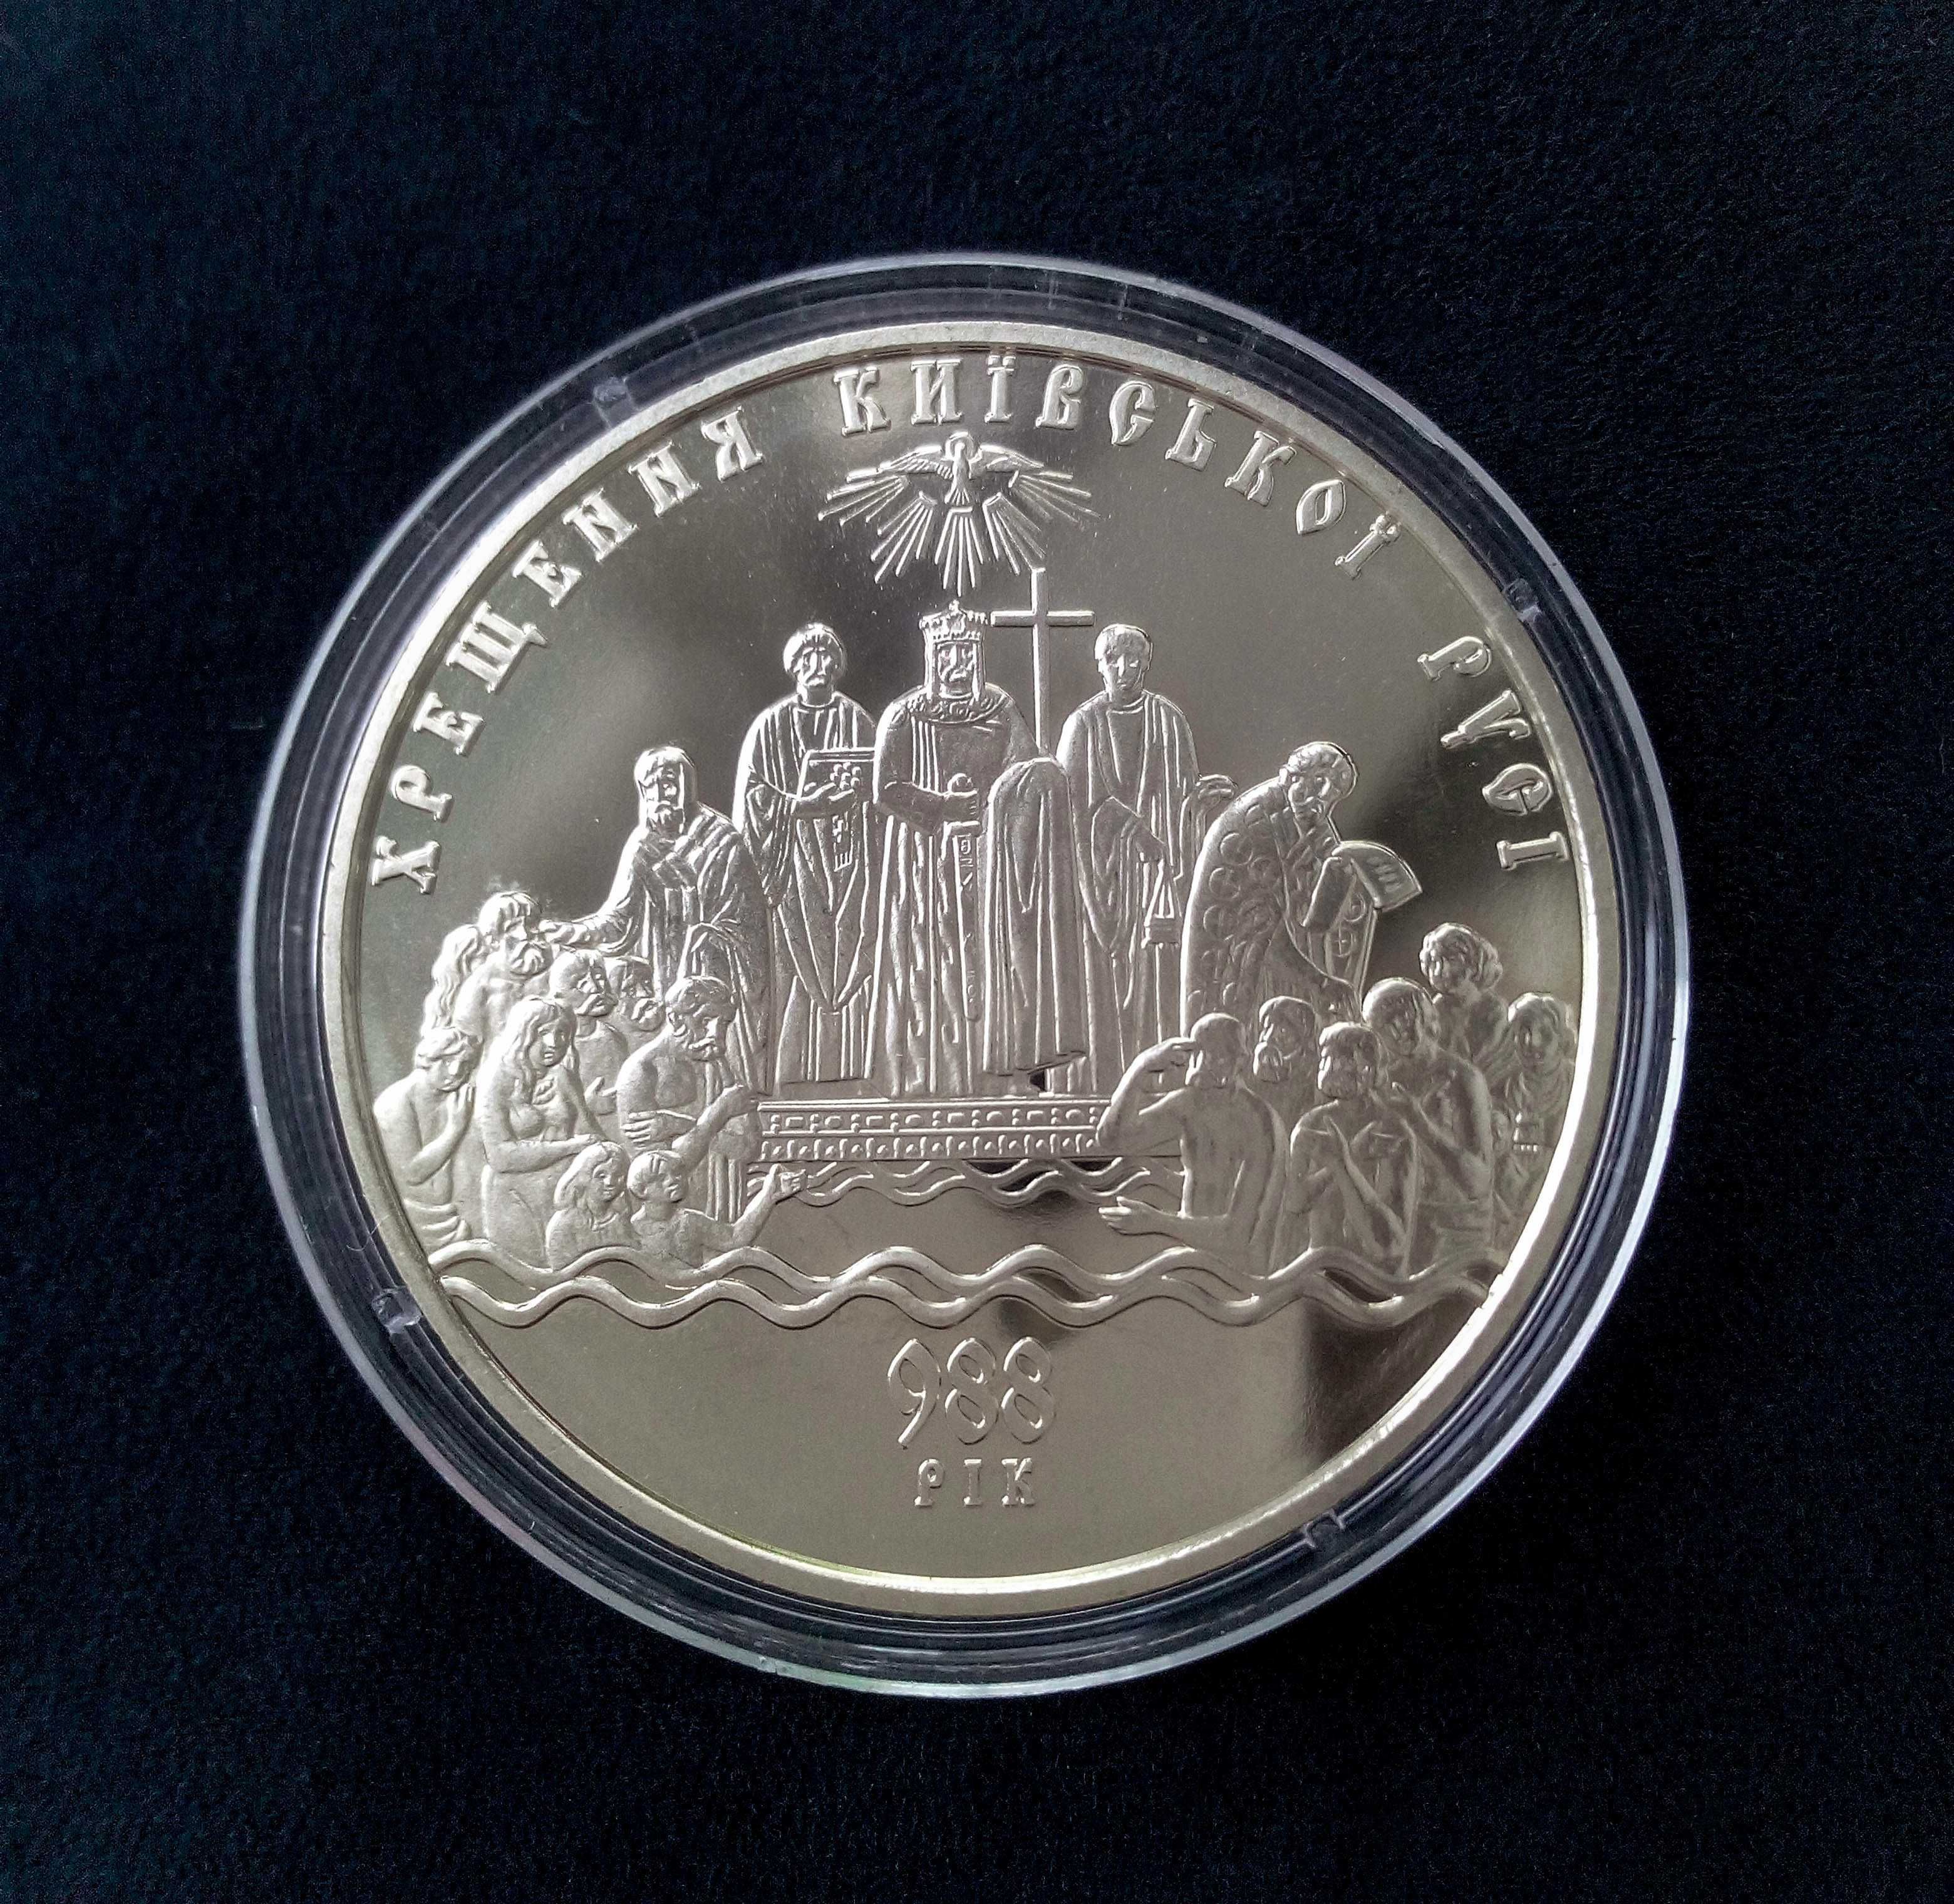 Монета 5 грн Хрещення Київської Русі 2008 р.